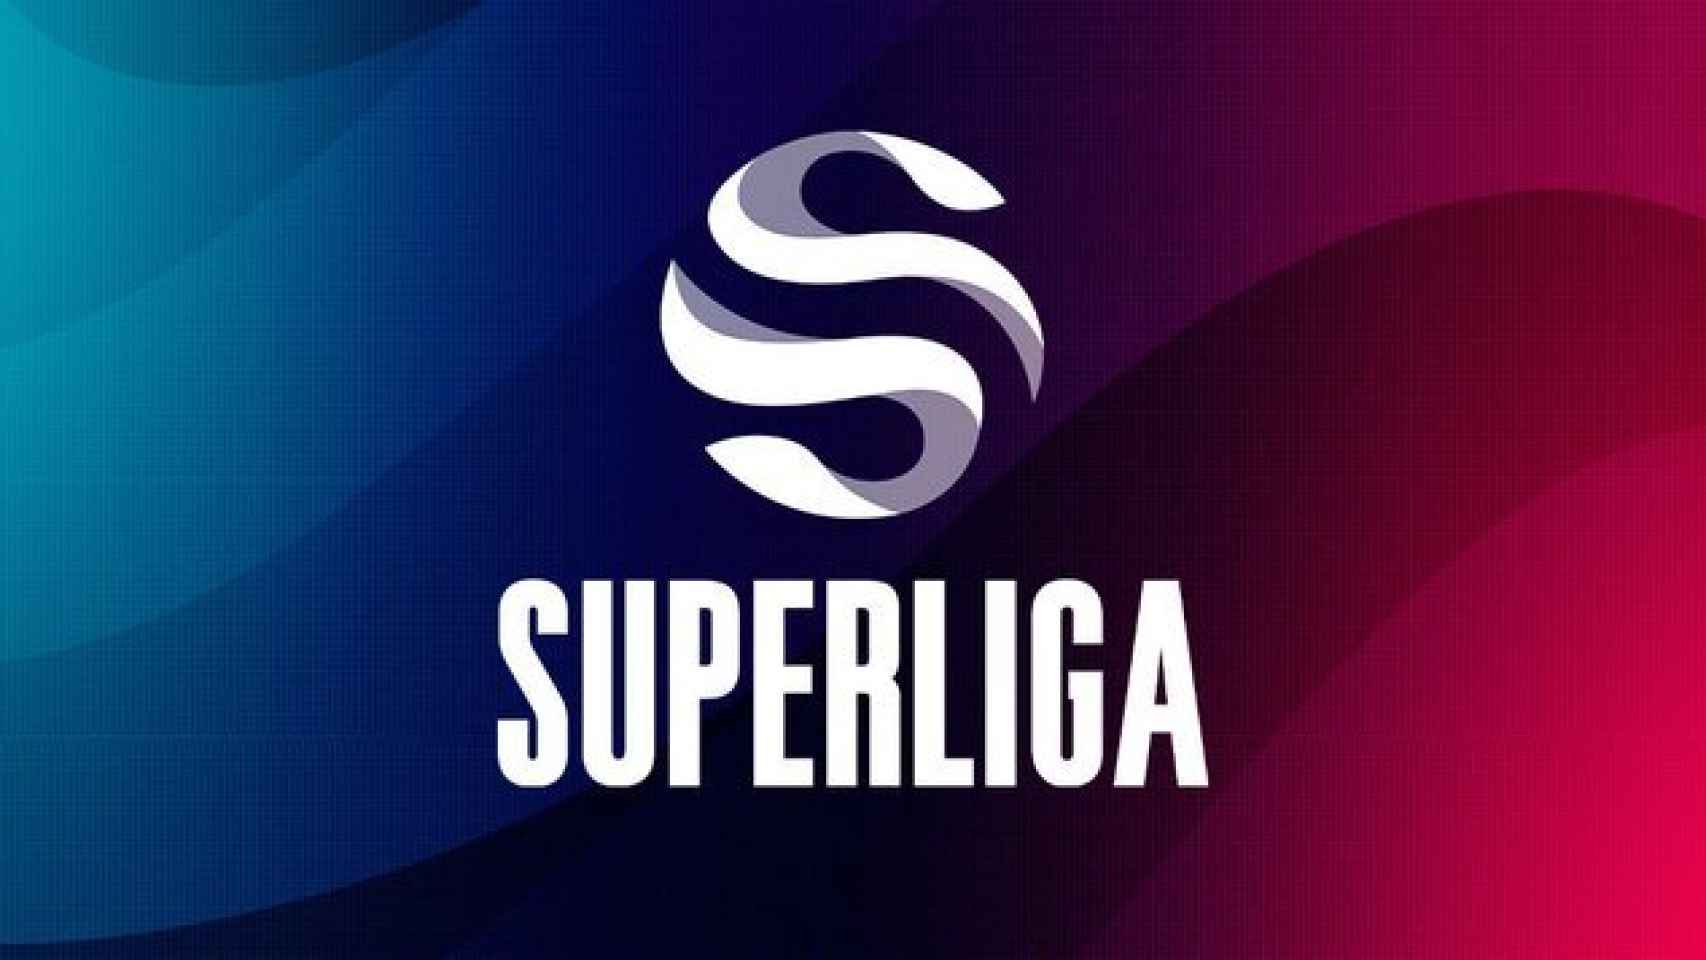 Superliga League of Legends